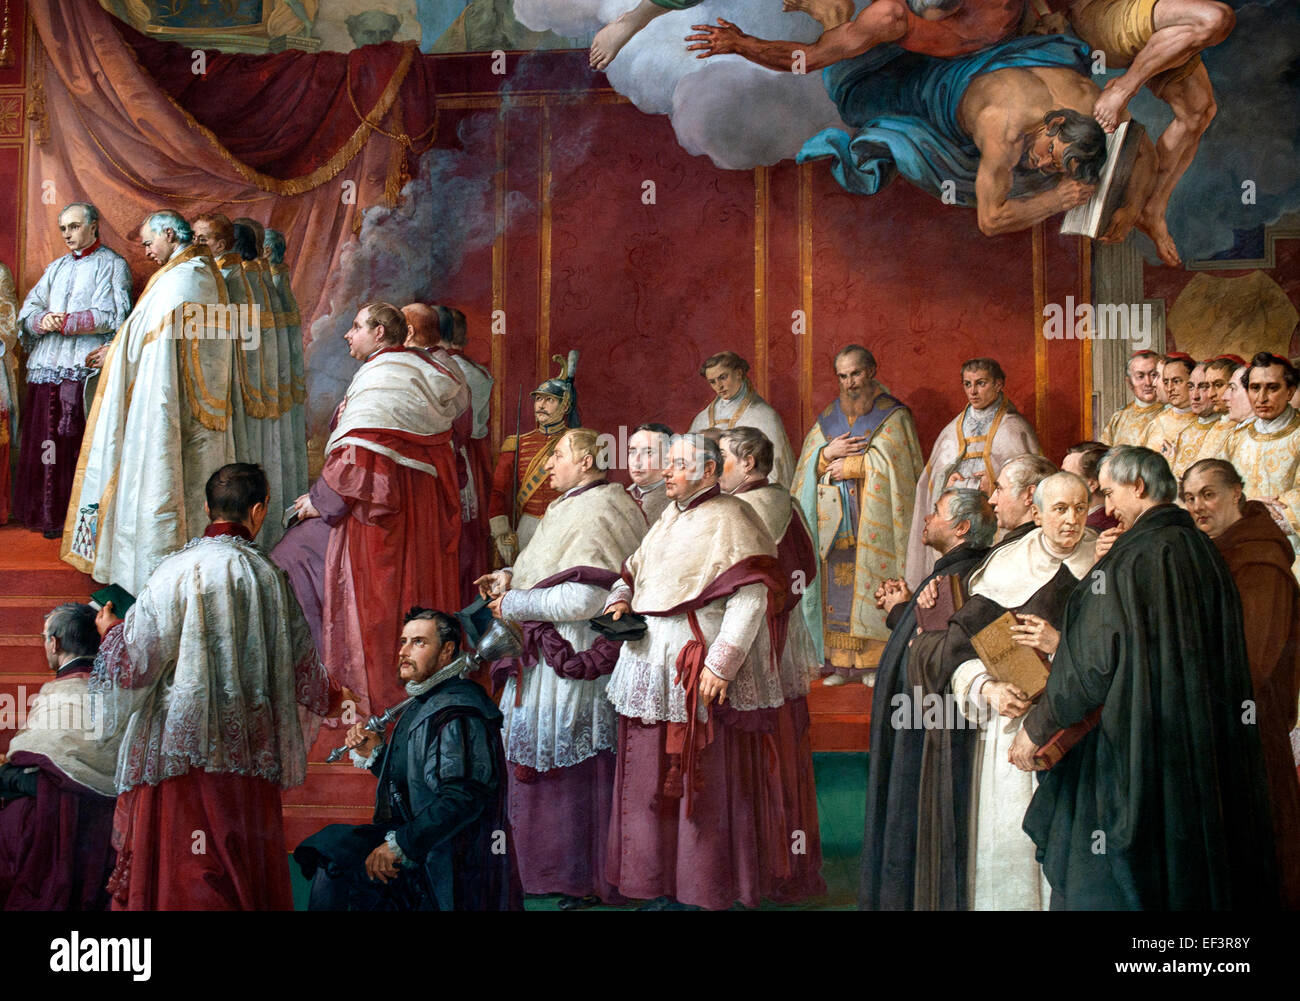 Das Zimmer von der Unbefleckten Empfängnis wurde von Papst Pius IX. nach der Verkündung des Dogmas von der Unbefleckten Empfängnis 1854 Maler Francesco Podesti 1800 – 1895 Fresko päpstlichen Gemächer Vatikan Rom Italien (Detail) beauftragt. Stockfoto